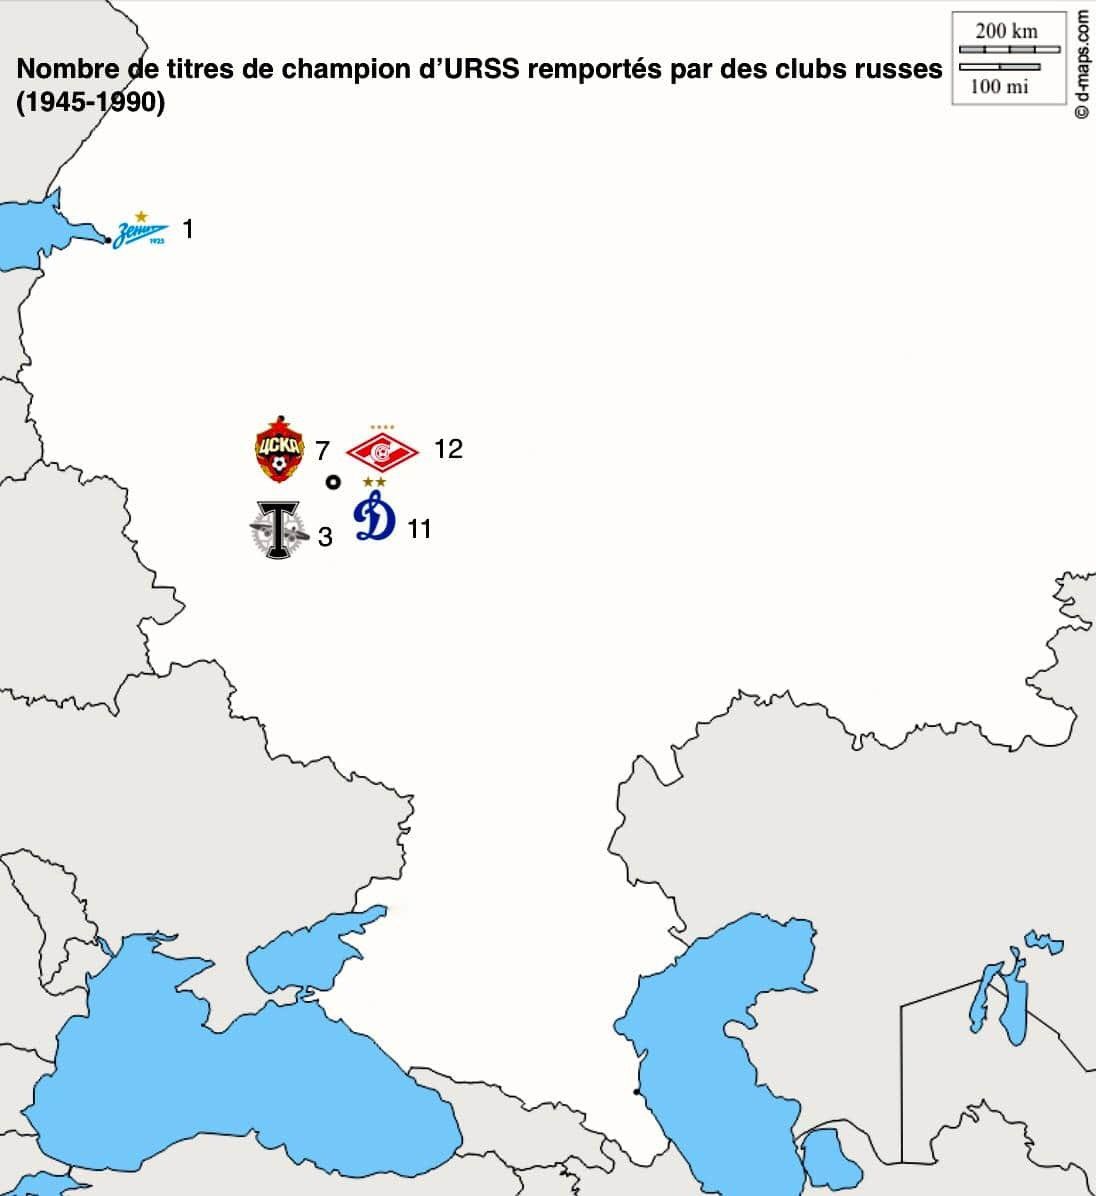  Russie :En URSS (1945-1990) :Titres remportés par des clubs de capitales de RSS : 50/54 (93%)Par des clubs de Moscou : 33/54 (61%)Part des clubs de Moscou dans les titres remportés par la RSS de Russie : 33/34, soit 97%. Seul le Zénith a remporté un titre dans les 80s